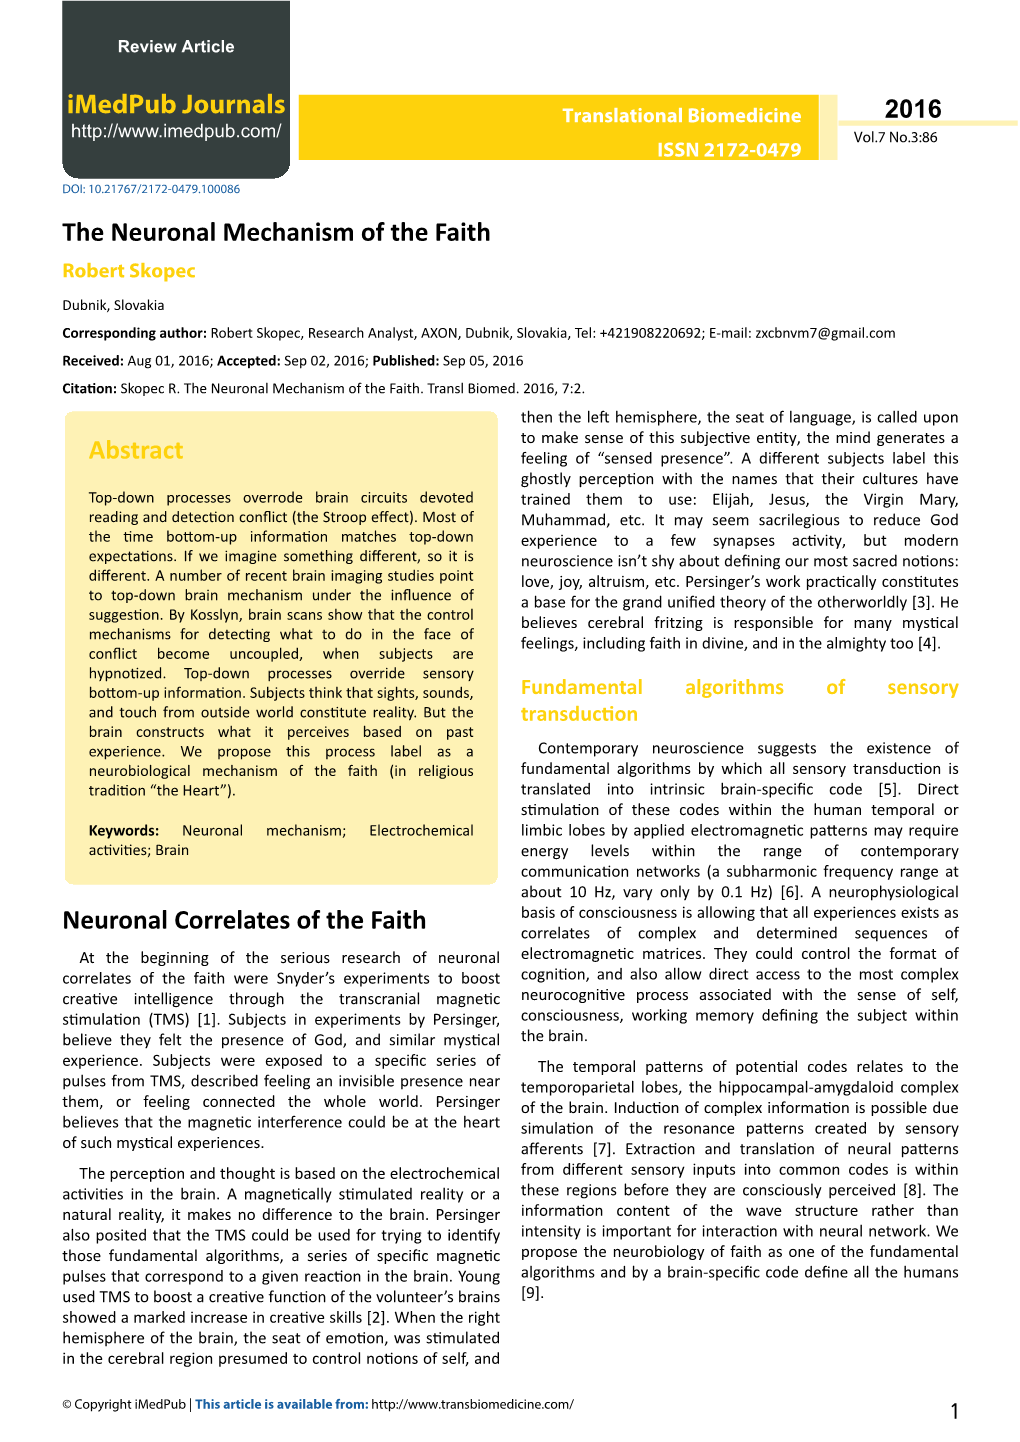 The Neuronal Mechanism of the Faith Robert Skopec